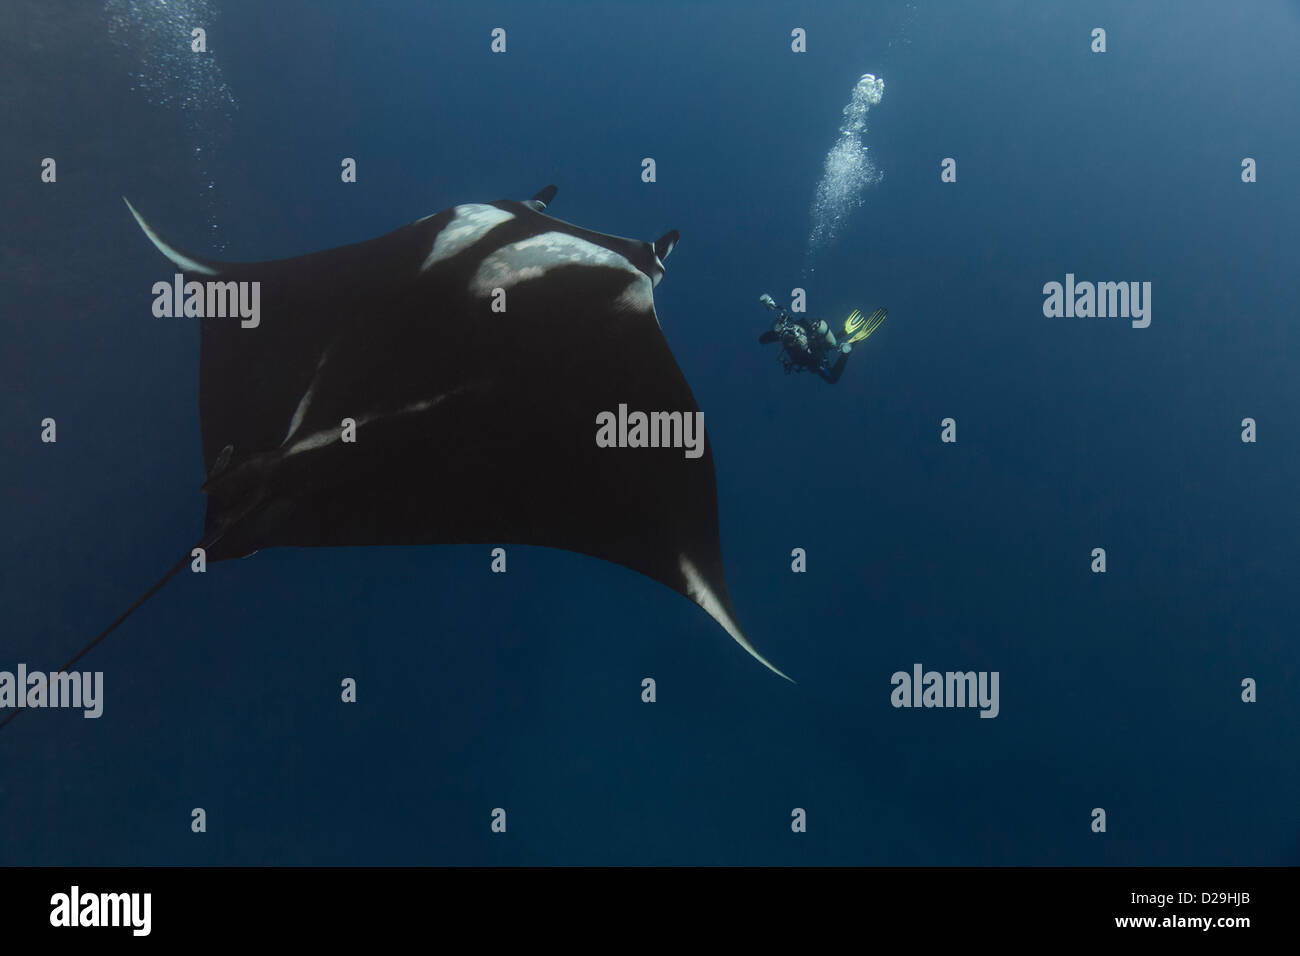 Giant oceanic manta ray fotografato in acqua al di fuori del Archipielago de Revillagigedo, Messico Punta Tosca divesite Foto Stock